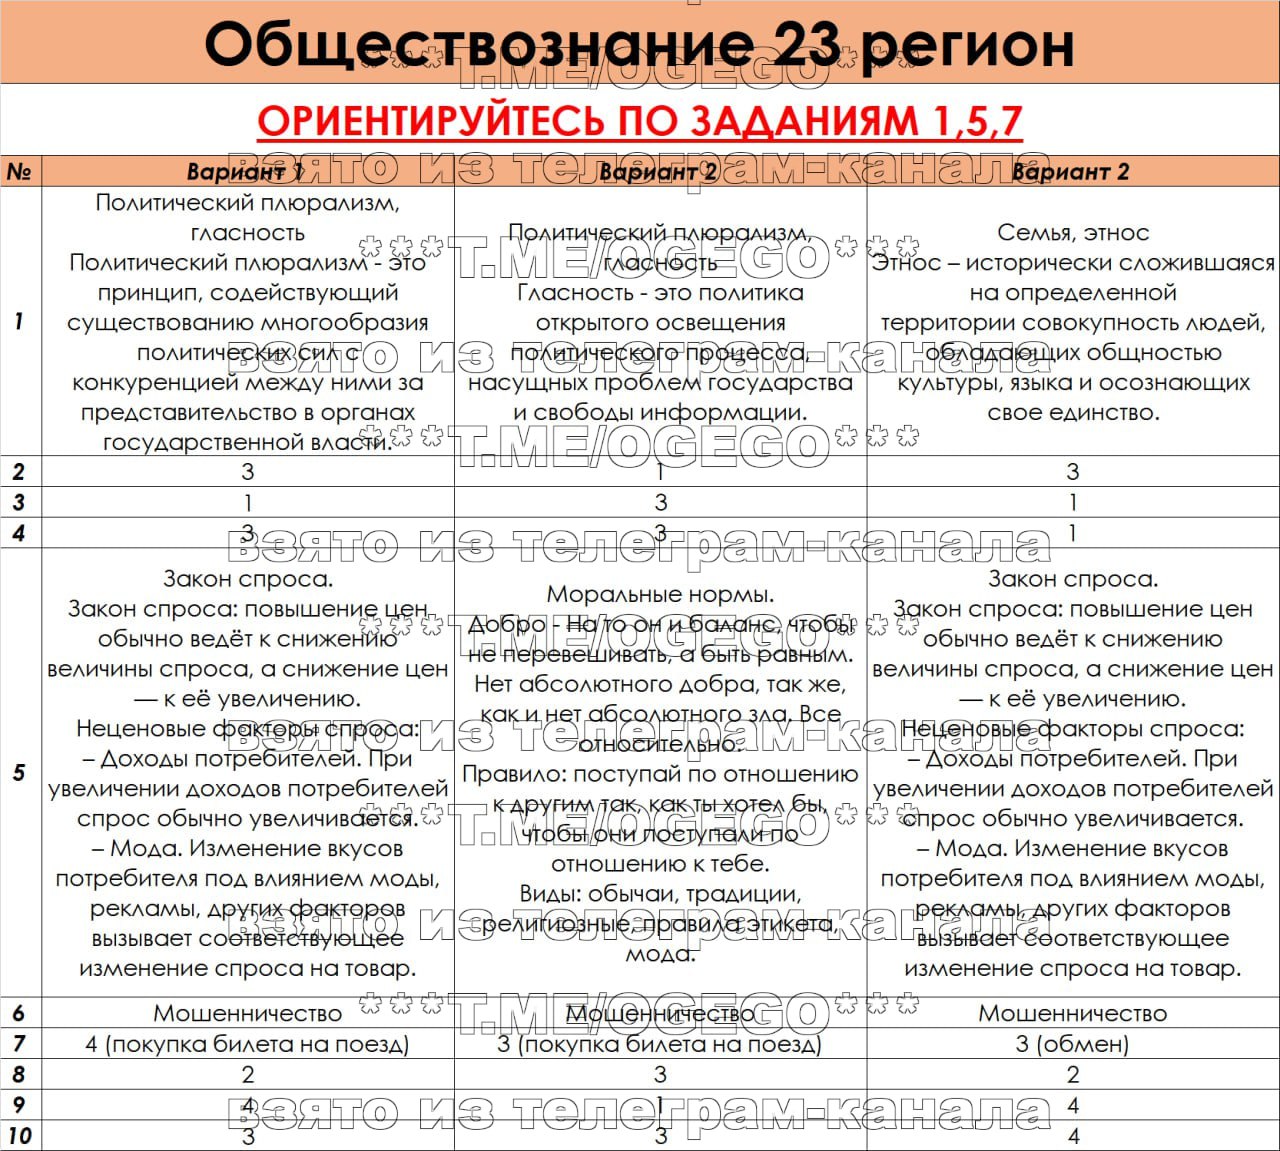 Телеграмм ответы на огэ по русскому языку фото 38